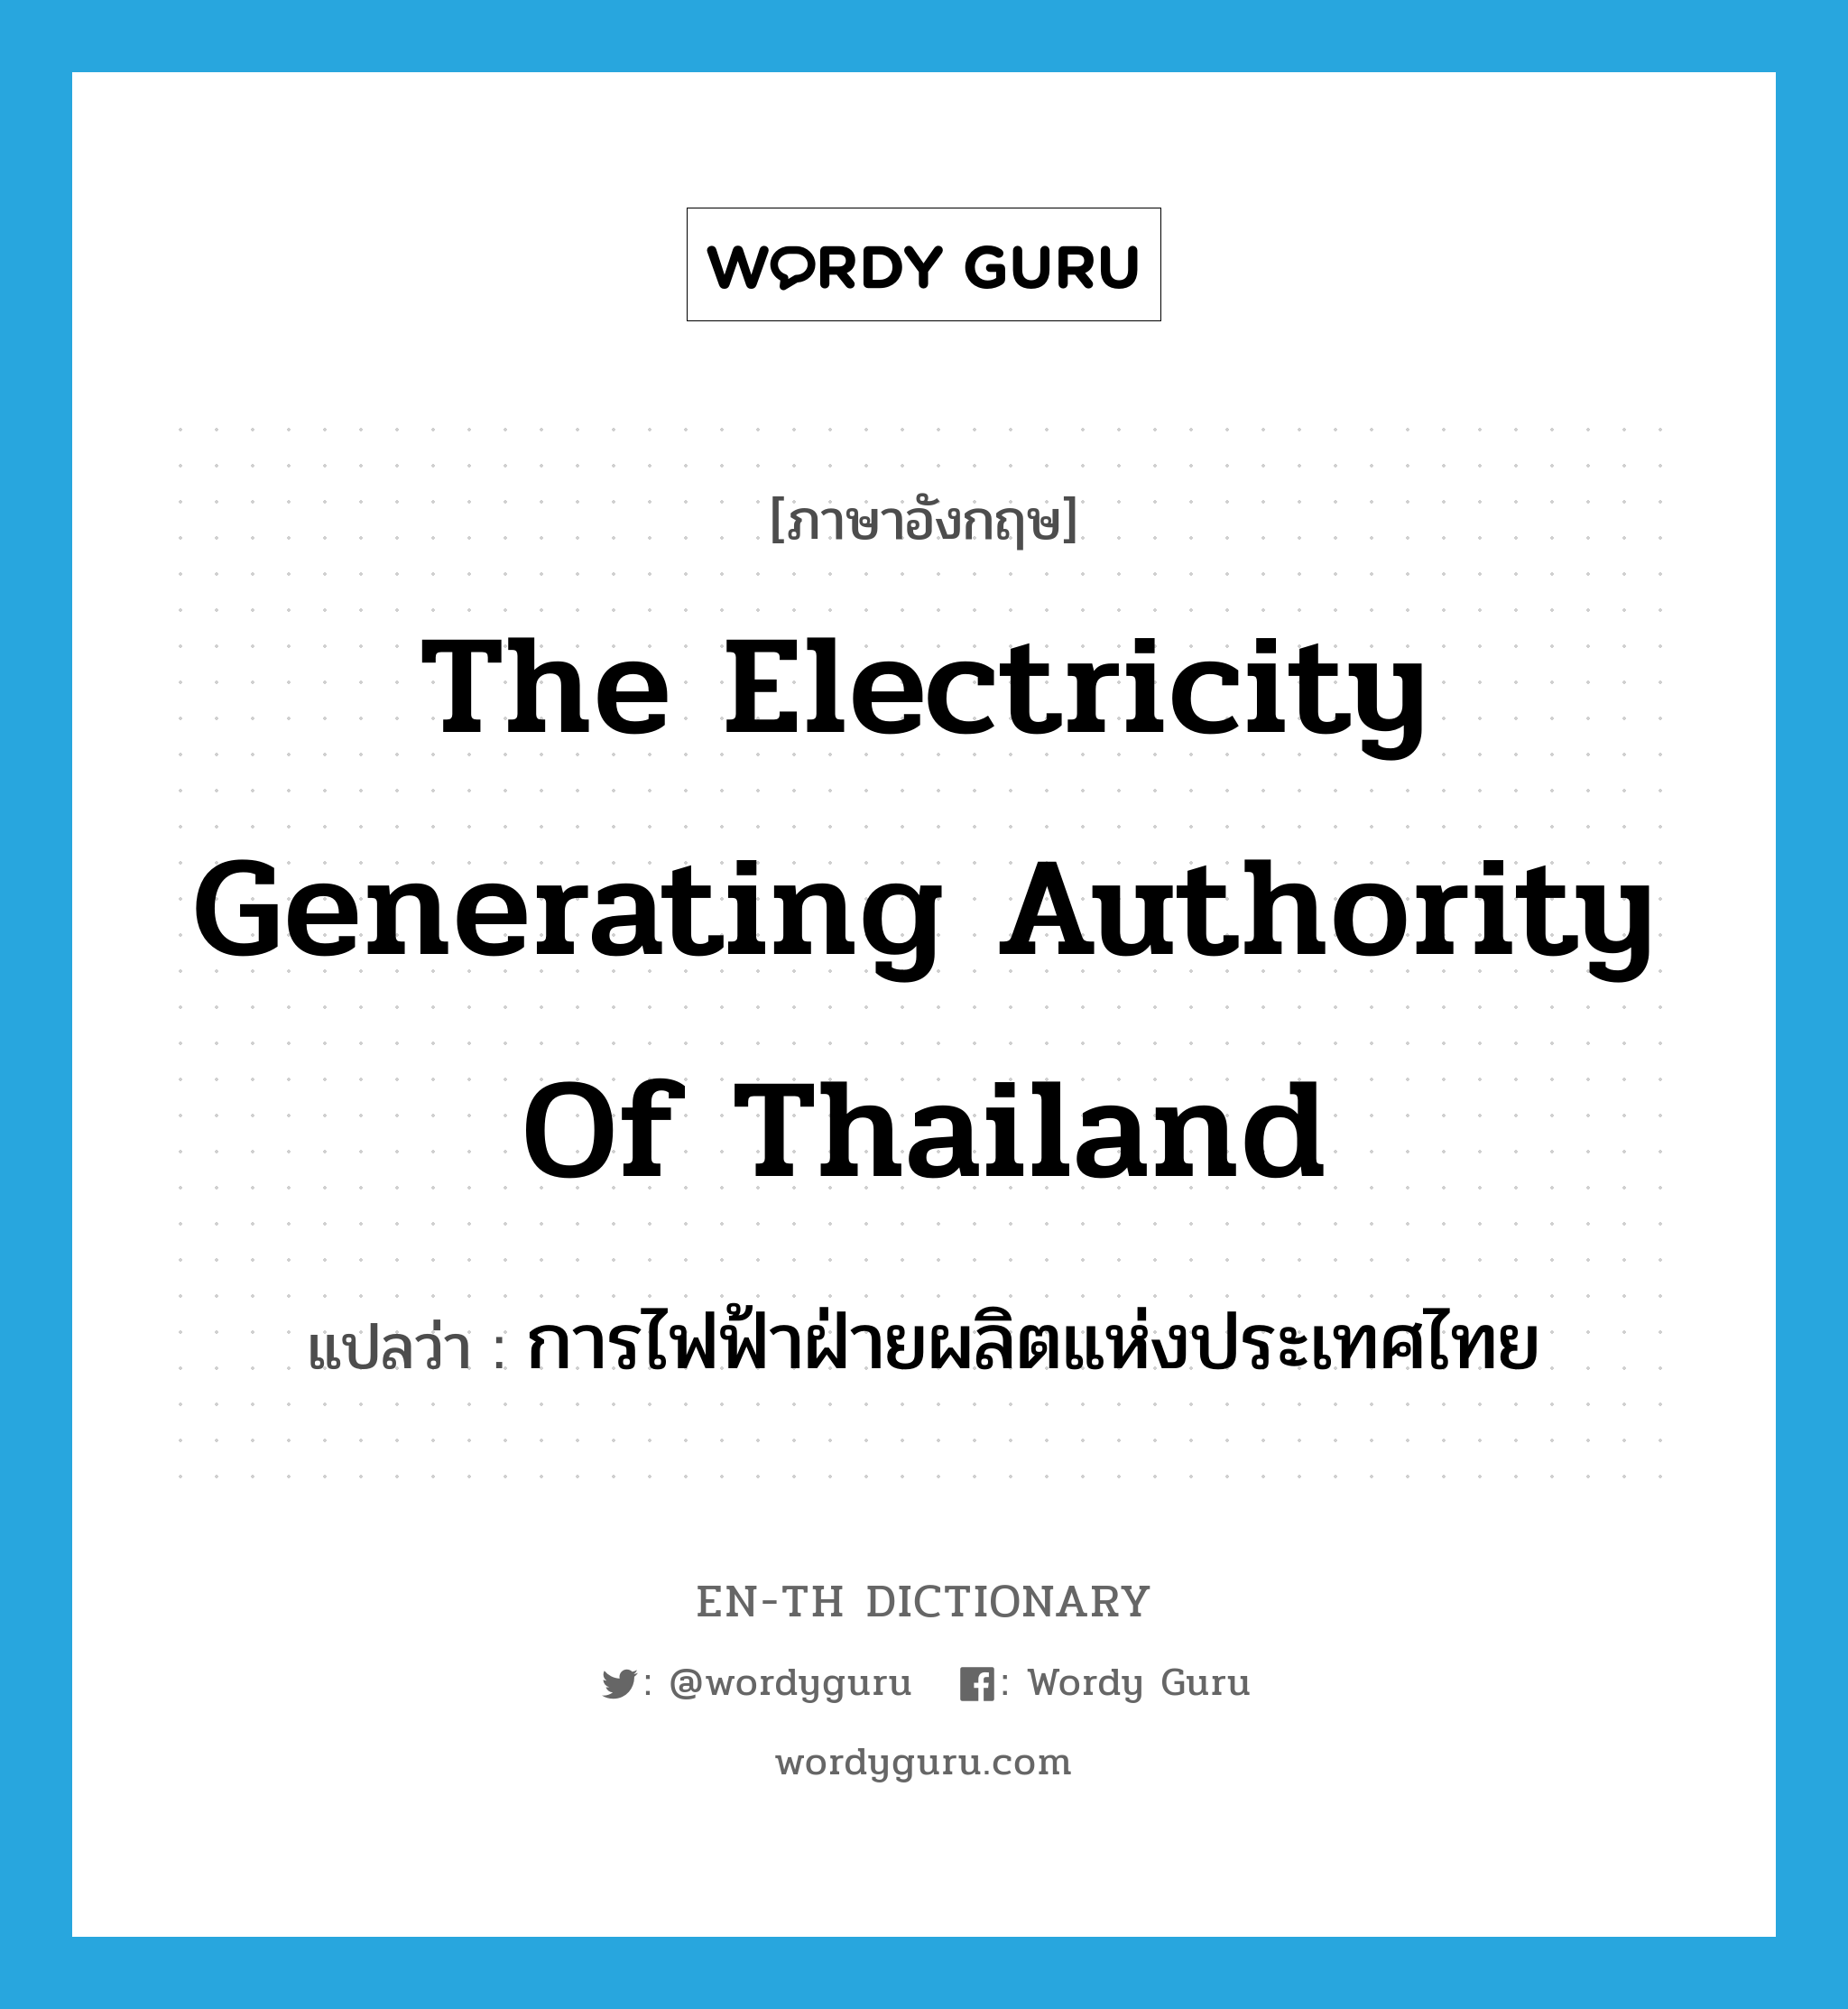 การไฟฟ้าฝ่ายผลิตแห่งประเทศไทย ภาษาอังกฤษ?, คำศัพท์ภาษาอังกฤษ การไฟฟ้าฝ่ายผลิตแห่งประเทศไทย แปลว่า The Electricity Generating Authority of Thailand ประเภท N หมวด N